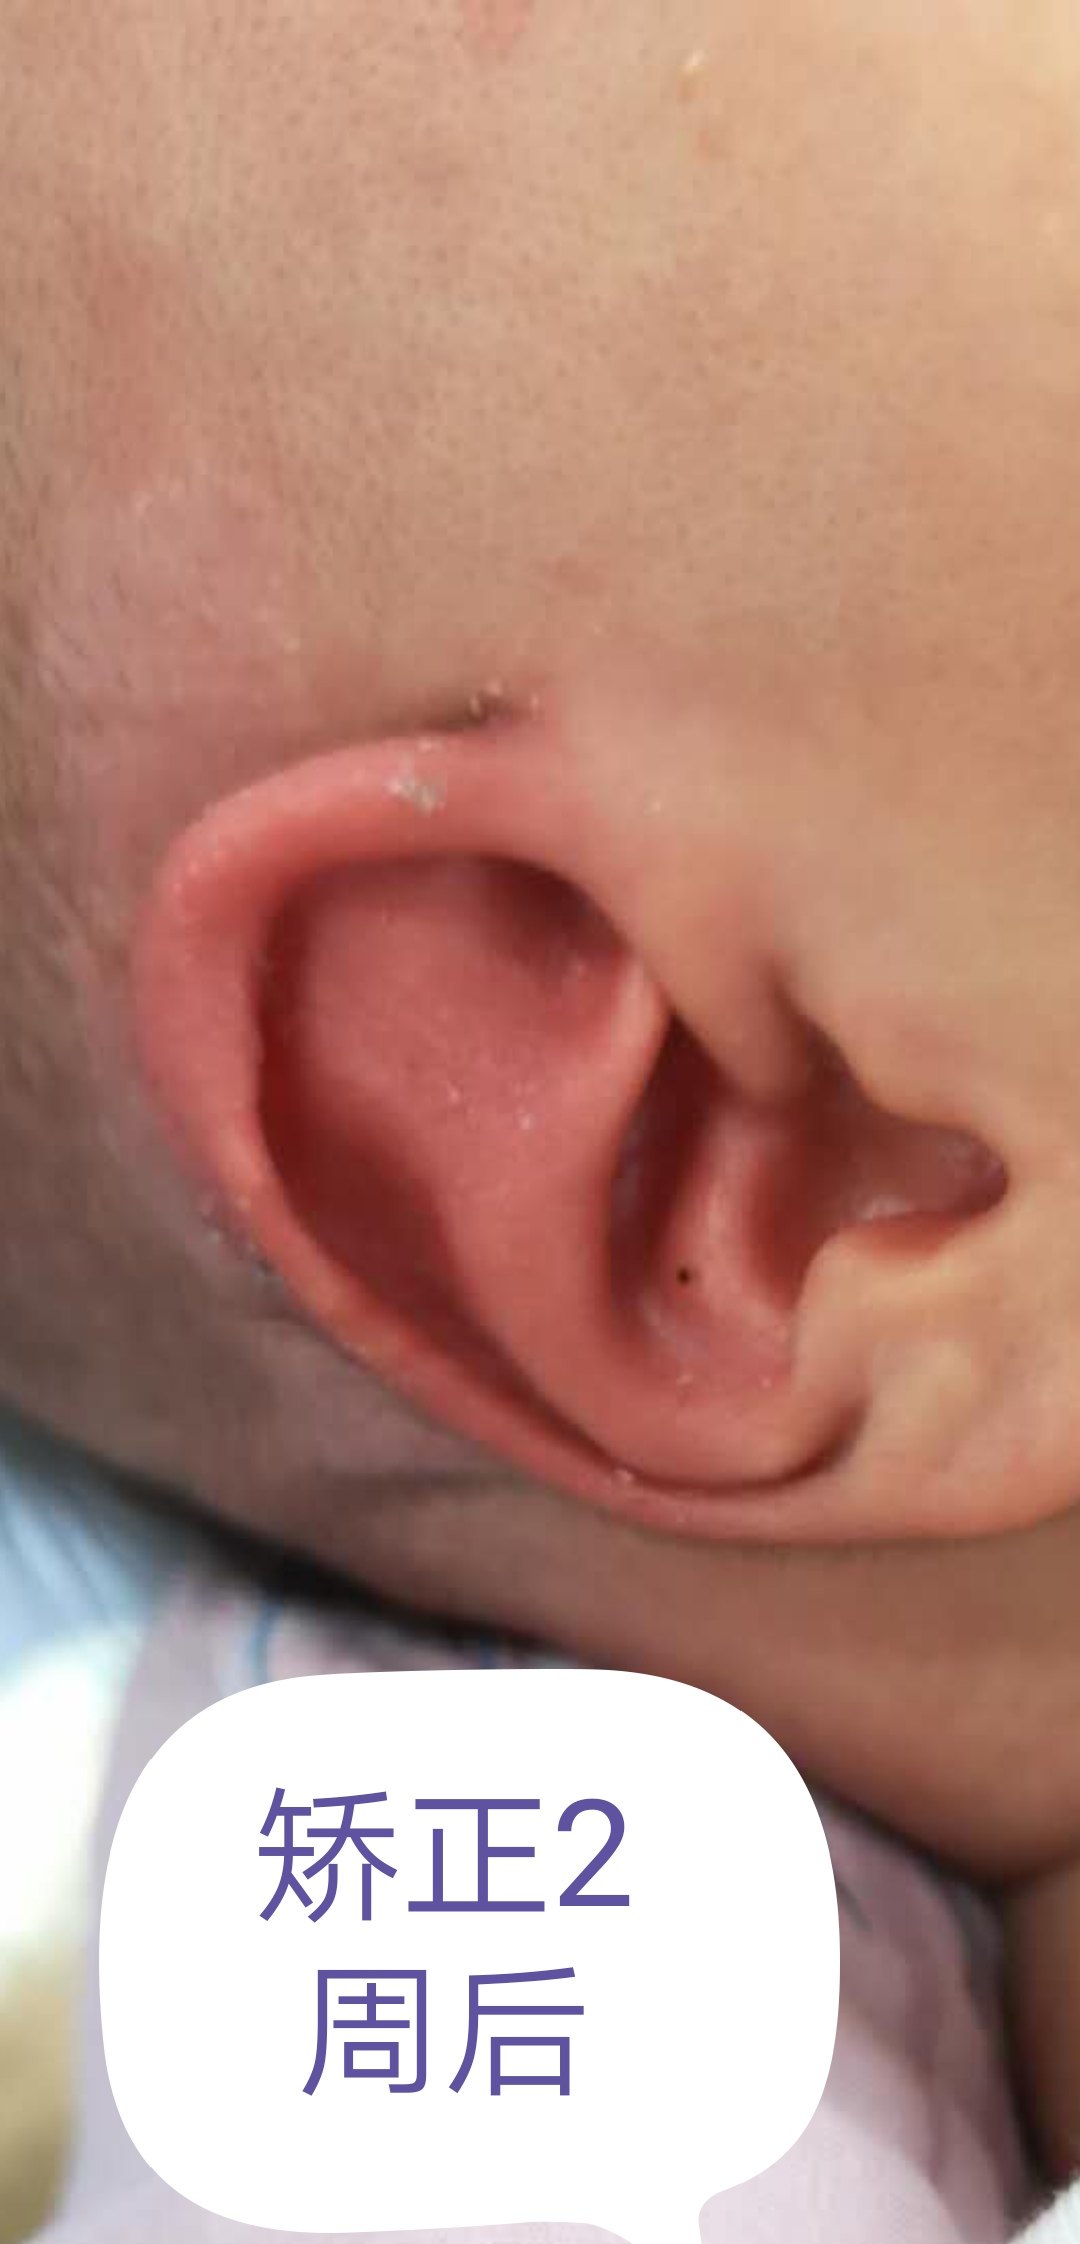 新生儿耳廓畸形,得早干预!